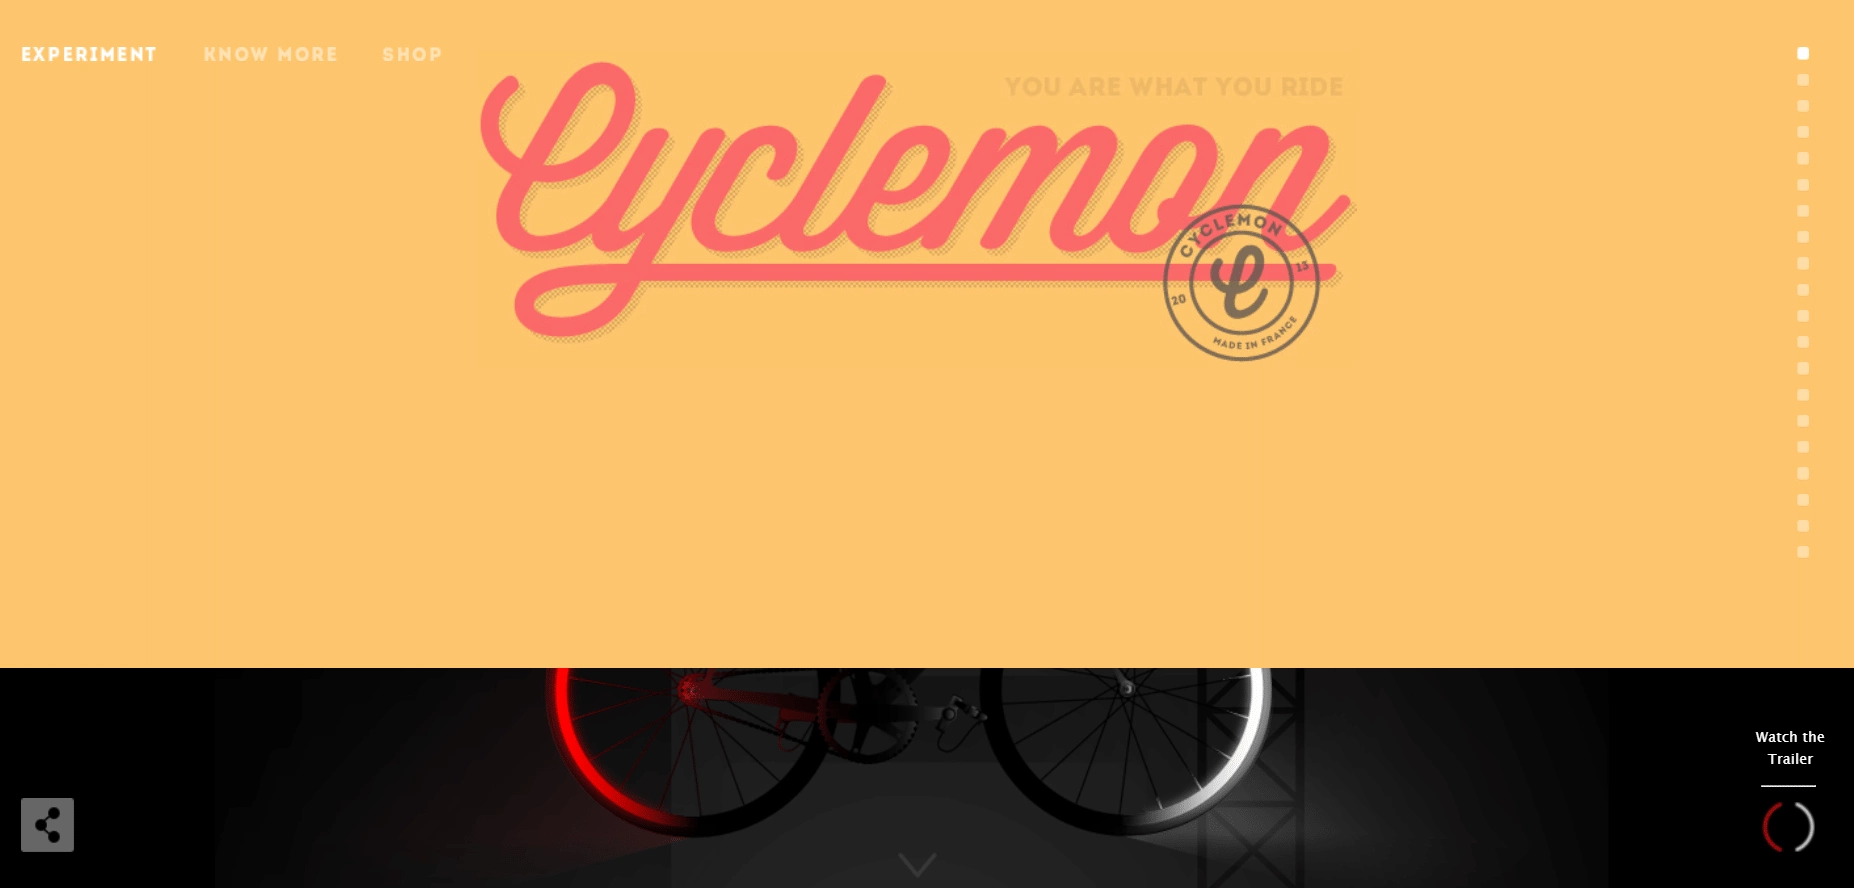 Cyclemon - 10+ Best Interactive Websites [Top Examples]